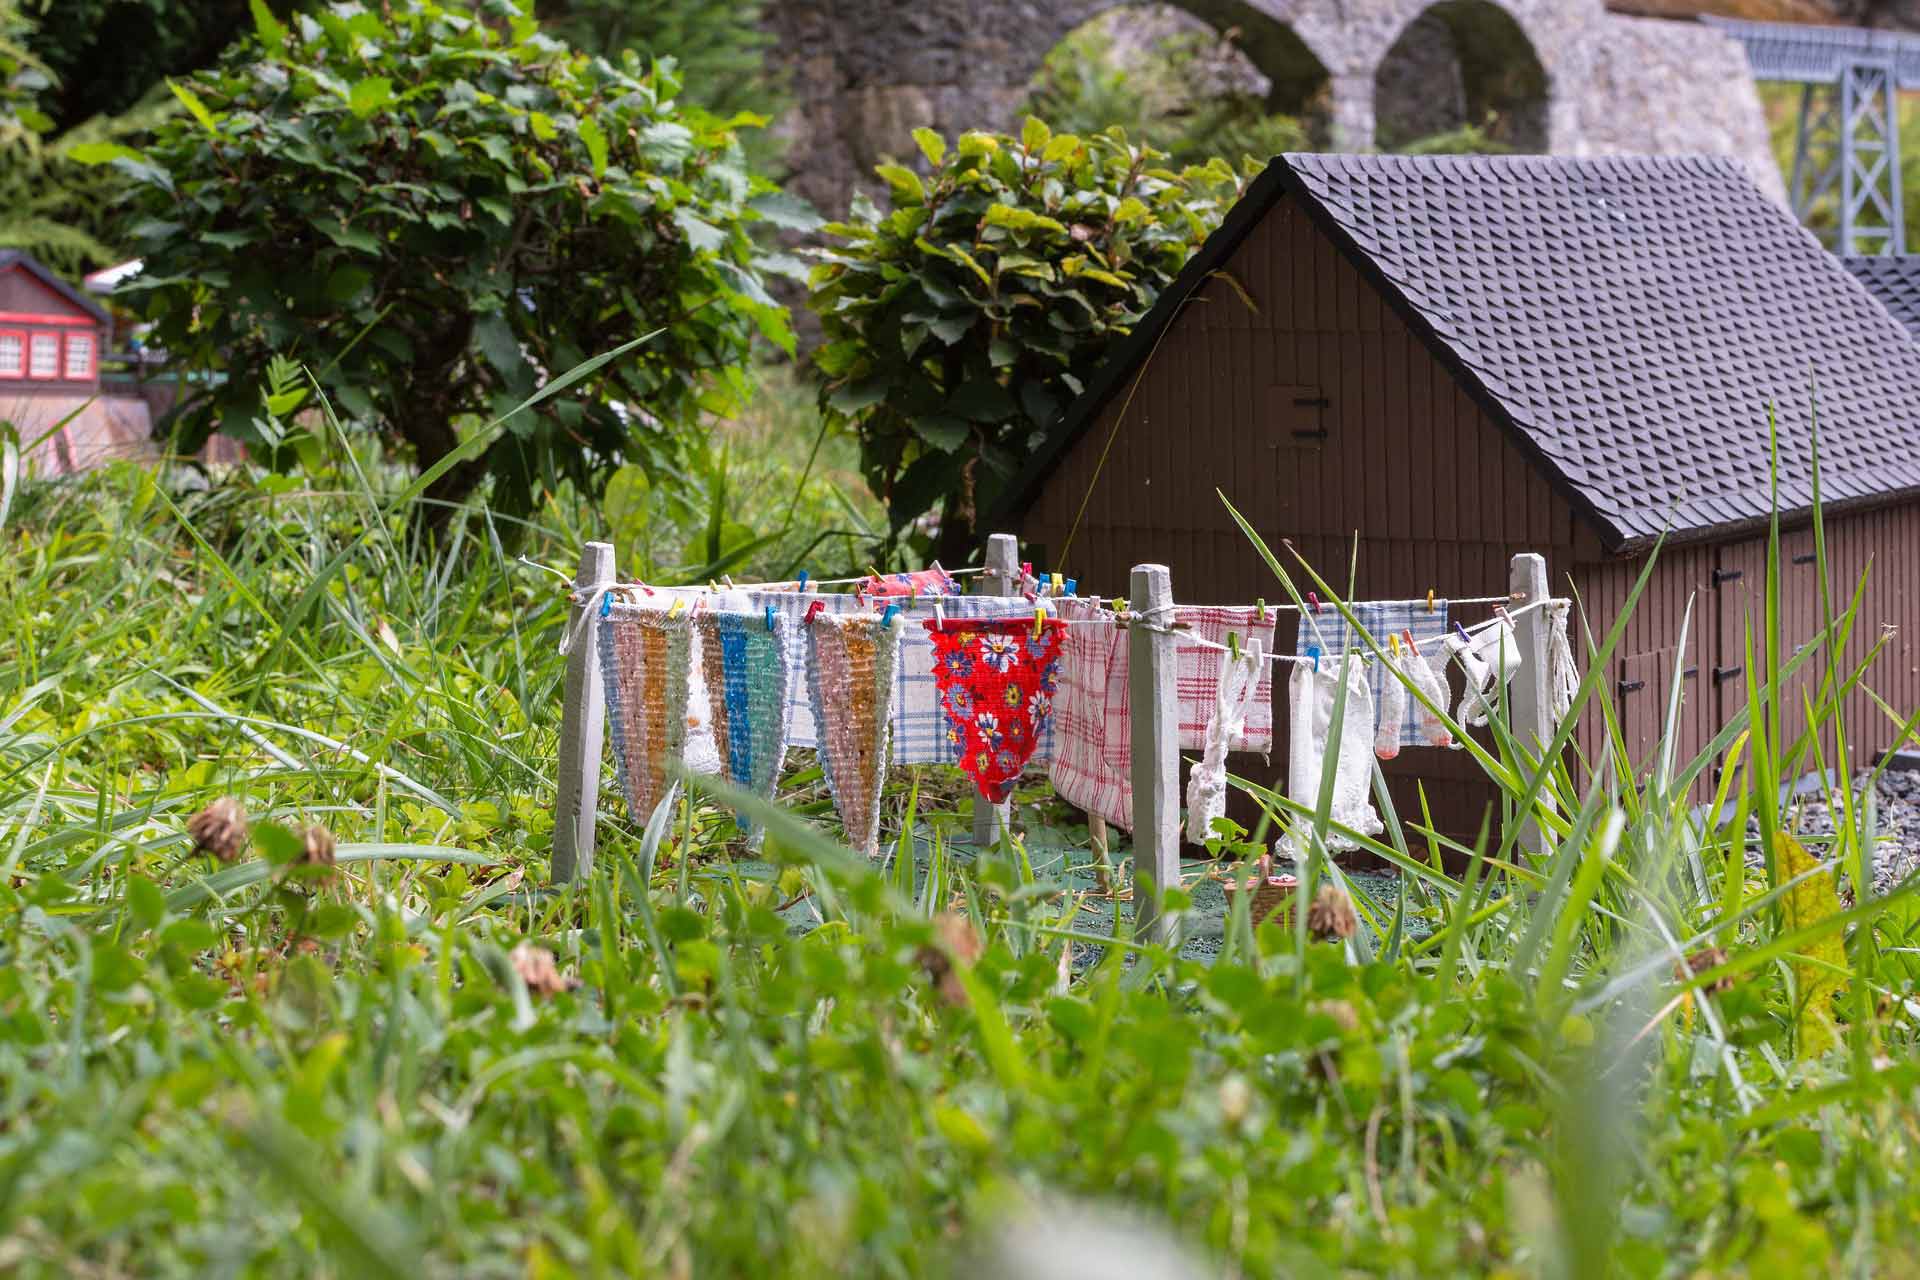 Das Klein Erzgebirge in Oerden bietet eine faszinierende Miniaturwelt mit liebevoll gestalteten Landschaften und Gebäuden, die die Besucher in eine vergangene Ära entführen.